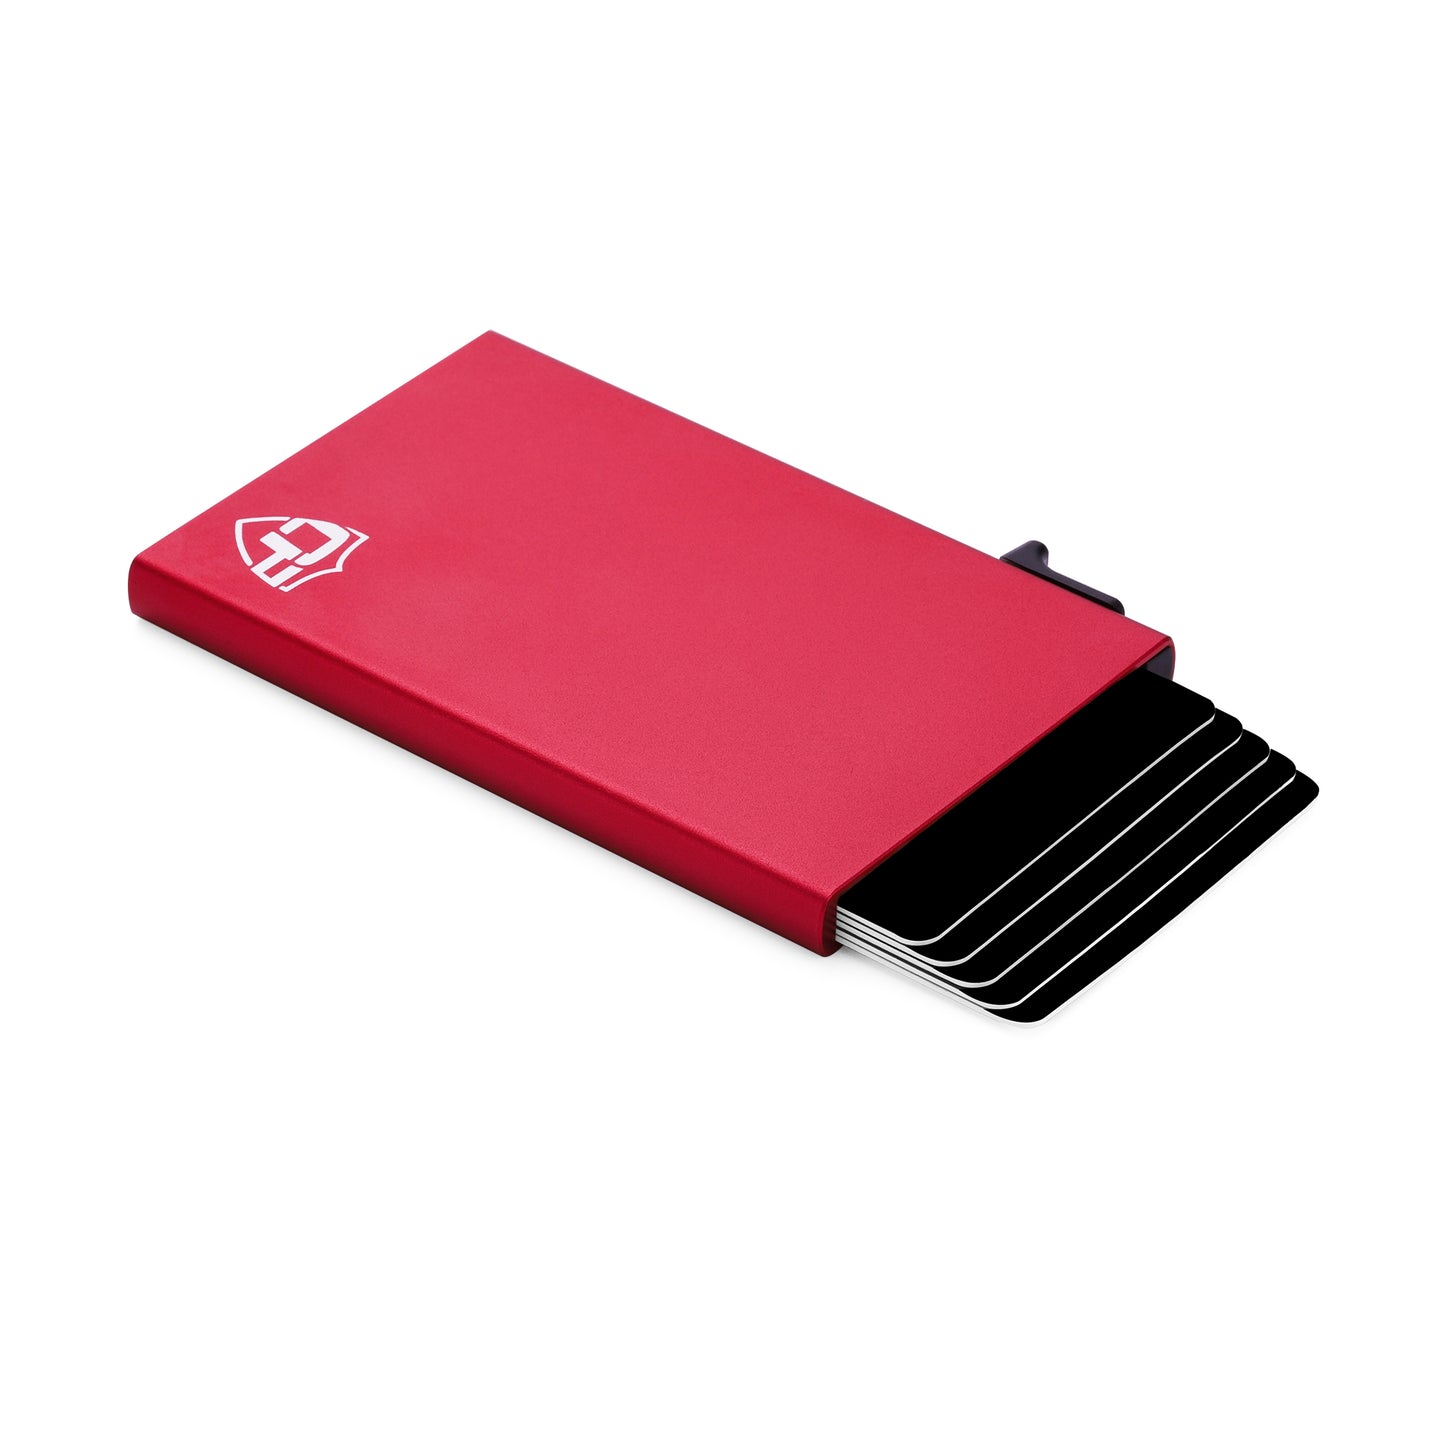 Card Blocr Metal Credit Card Holder Red Trigger Wallet